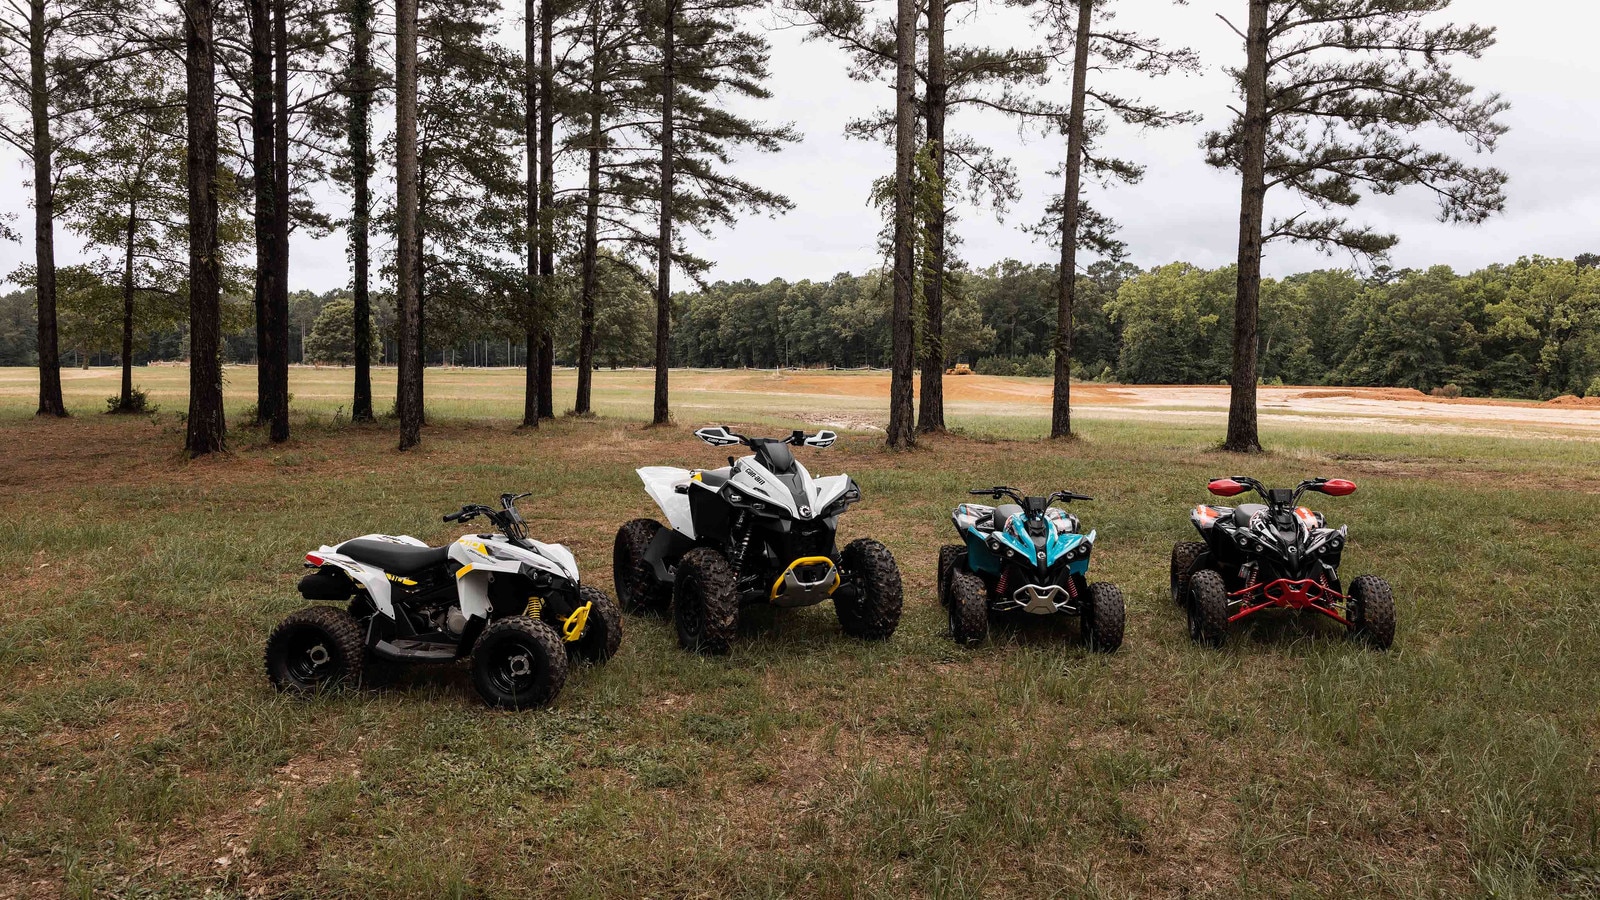 Four Can-Am Renegade ATVs